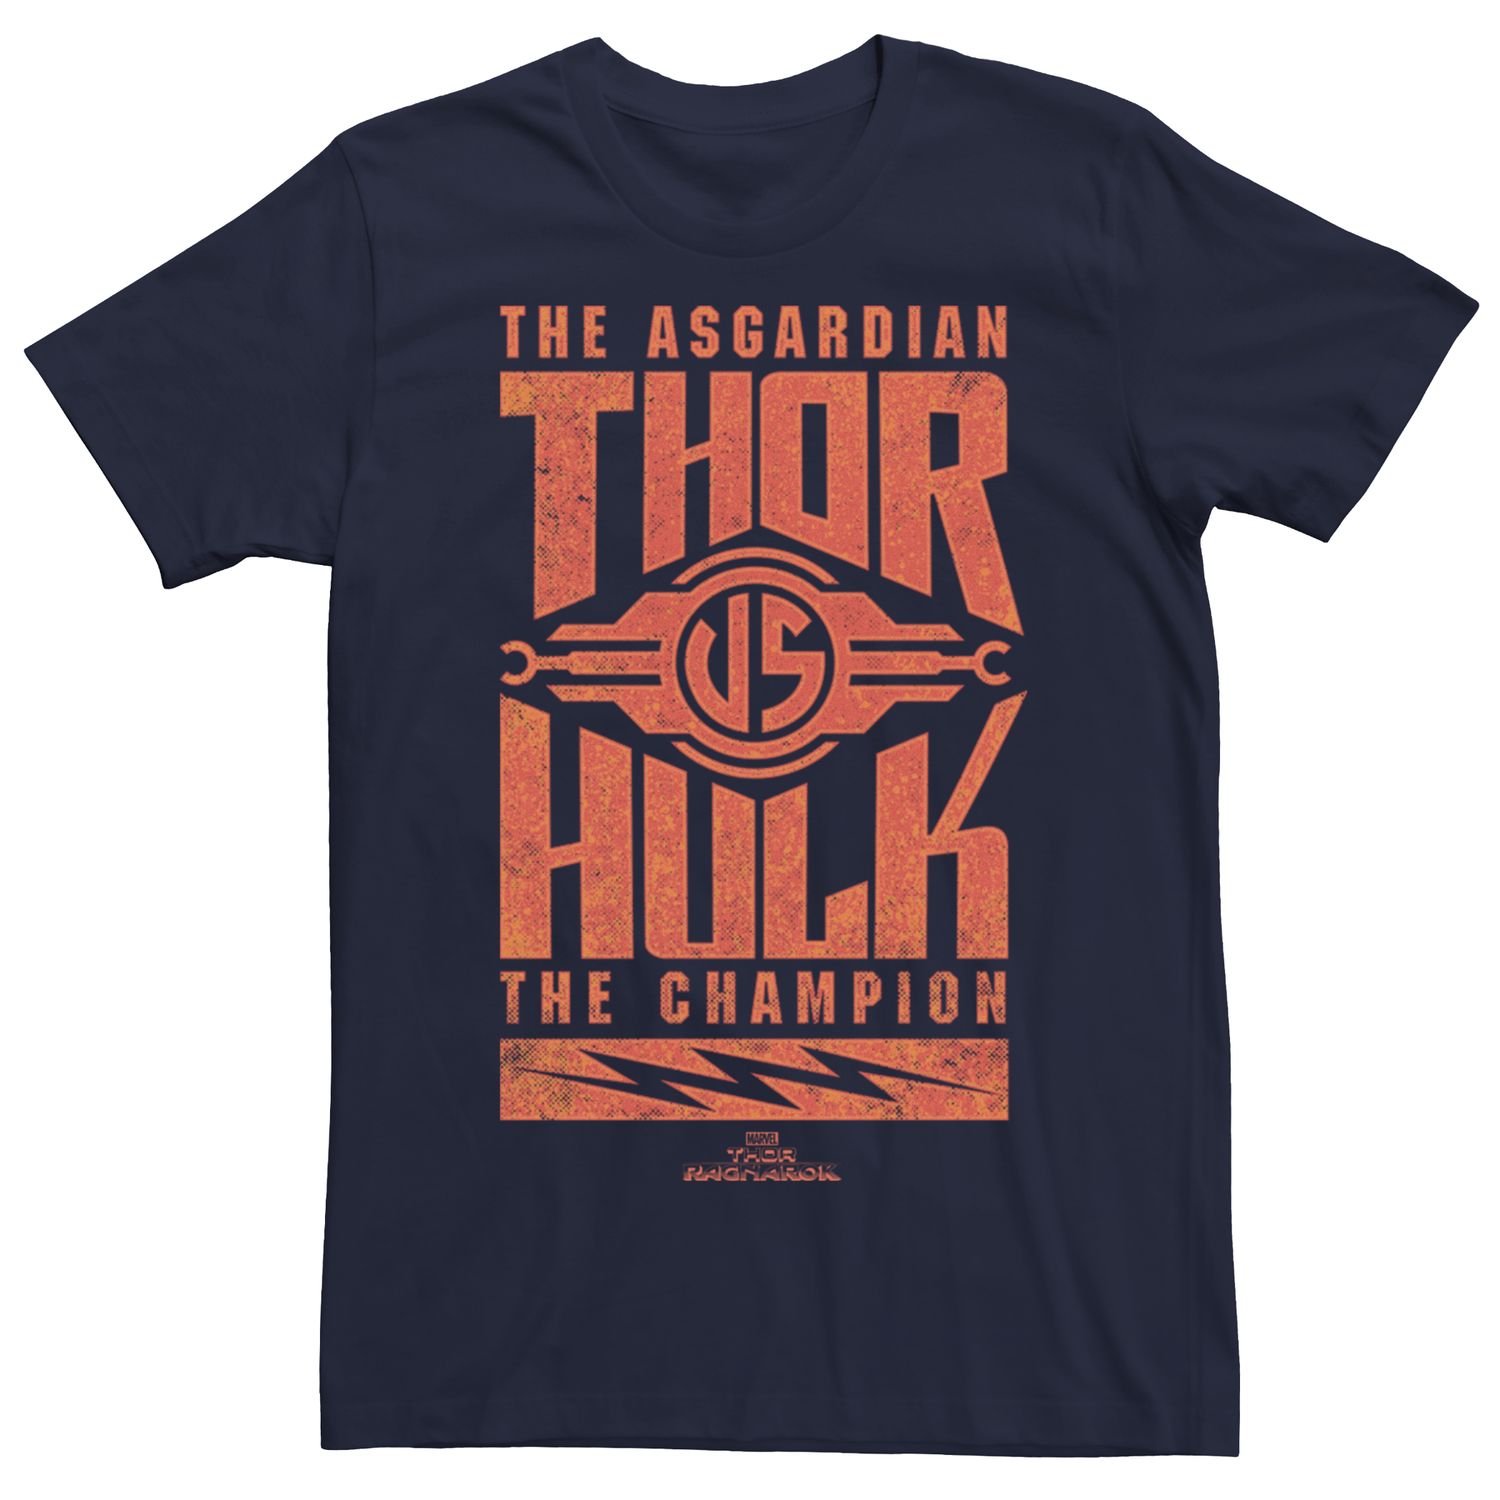 Мужская футболка с рисунком Marvel Thor Ragnarok Vs Hulk Asgardian Licensed Character